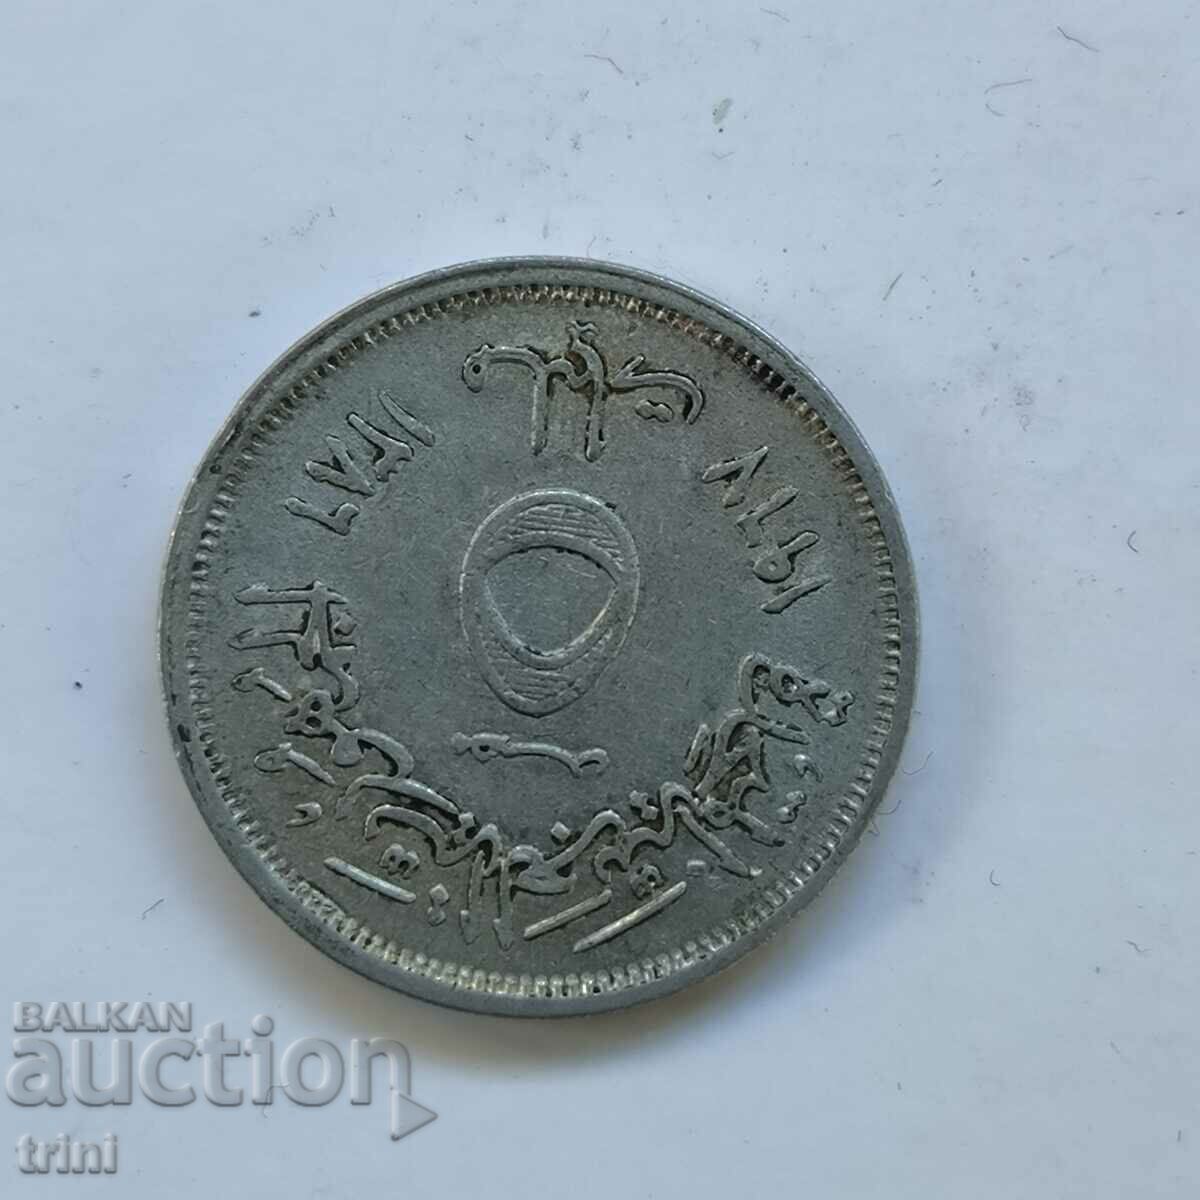 Egypt 5 millimeter 1967, aluminum